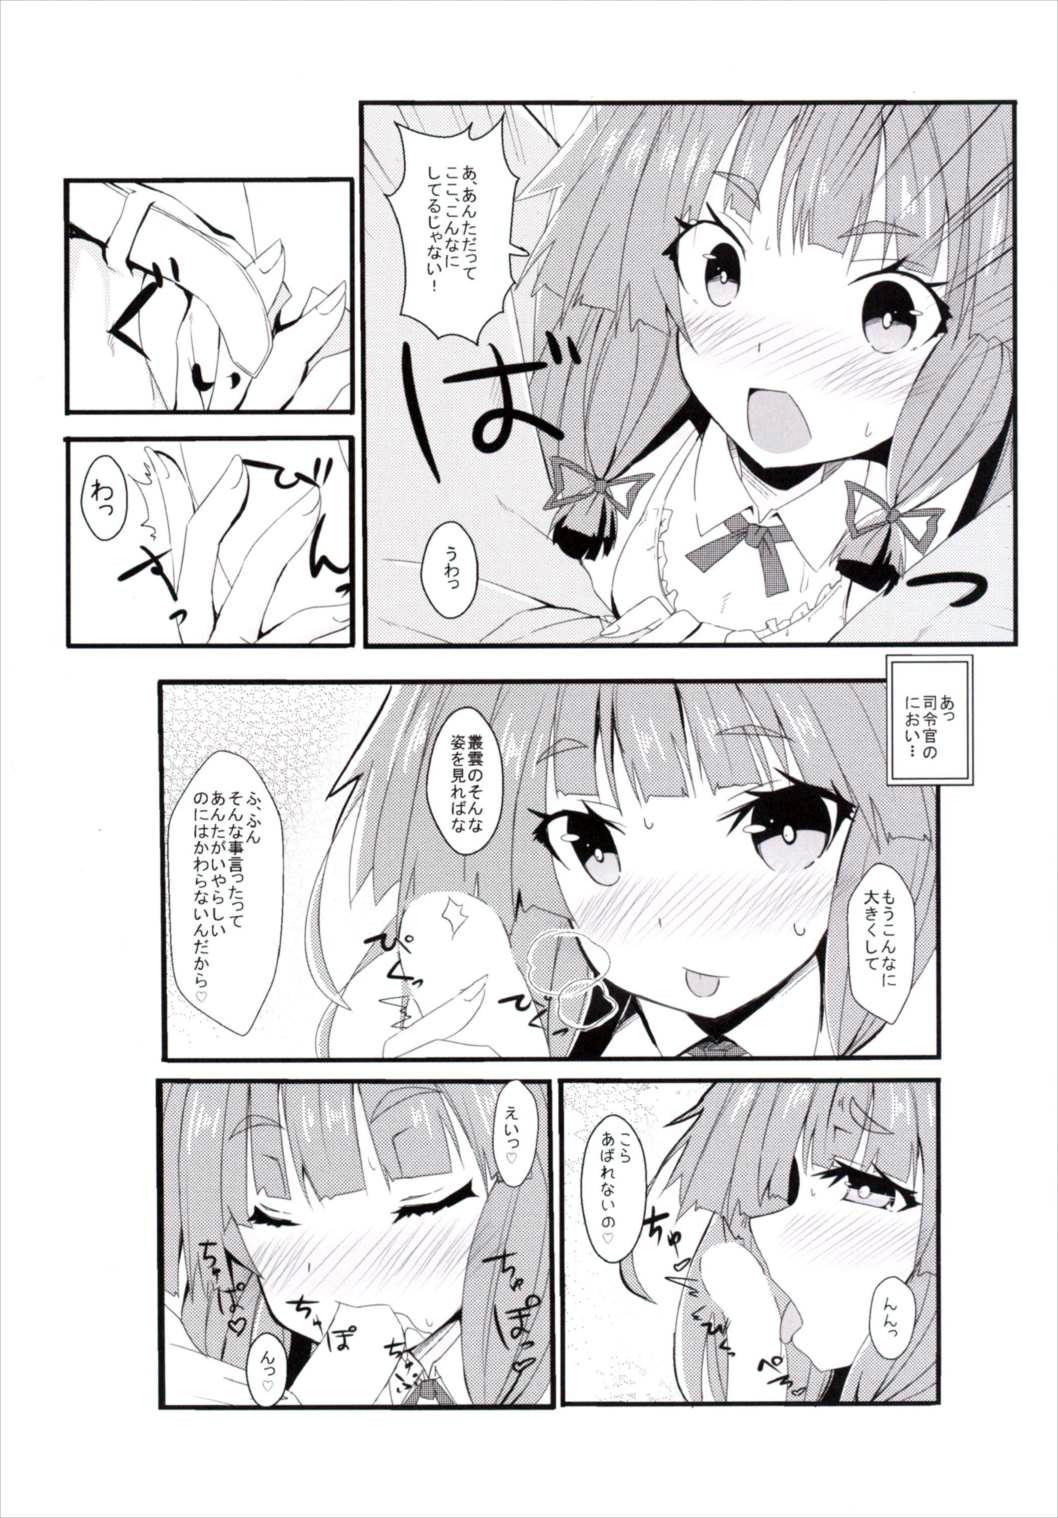 3some Murakumo - Kantai collection Livecams - Page 4